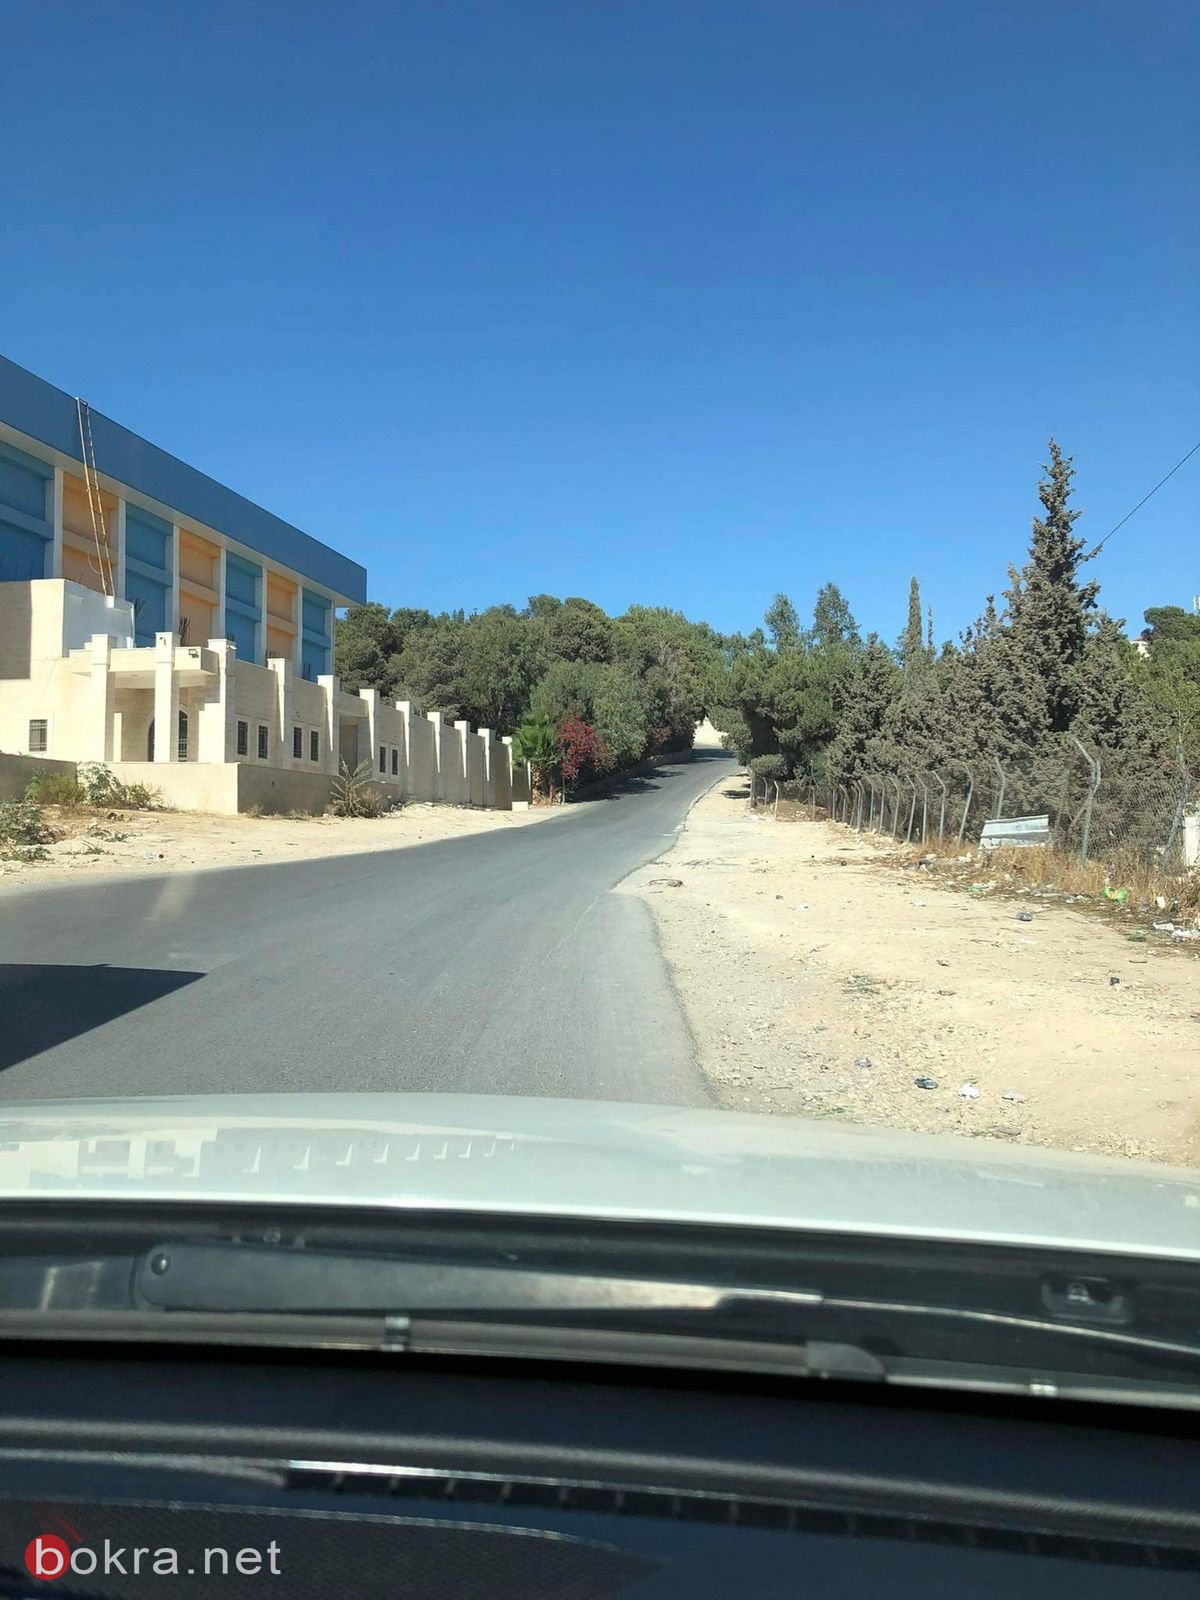 بالصور: جامعة القدس ابو ديس خاوية على عروشها-9